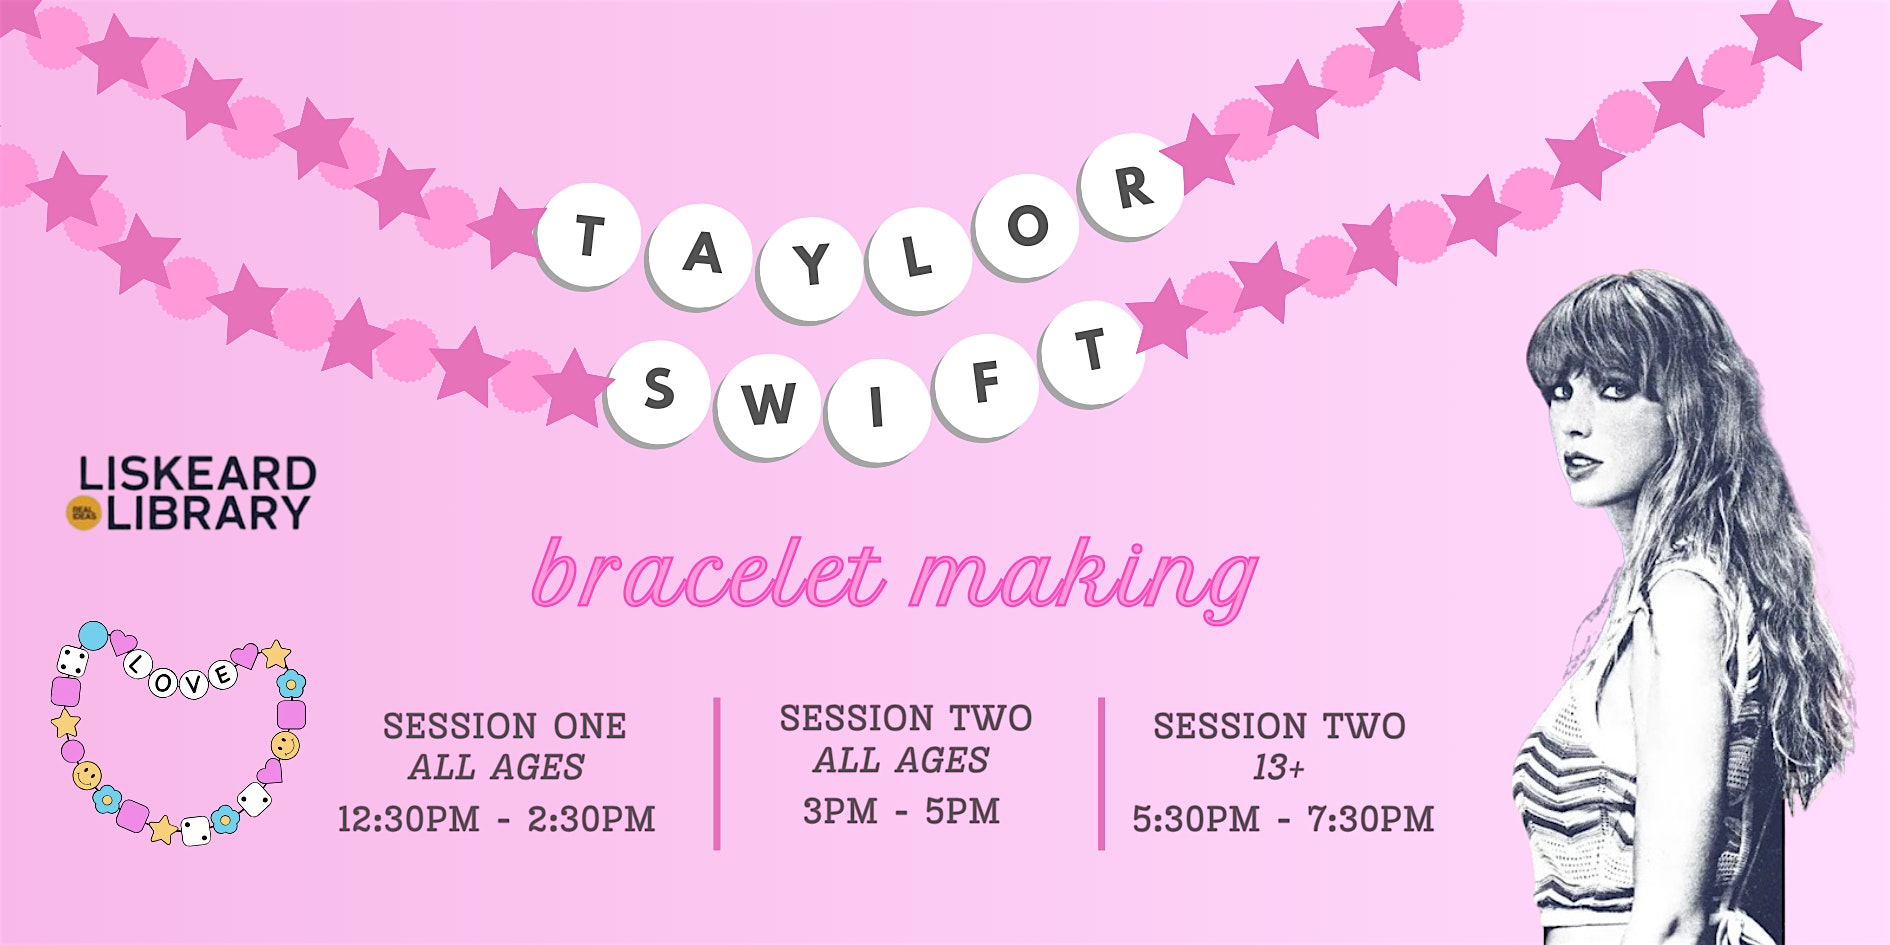 Taylor Swift Bracelet Making